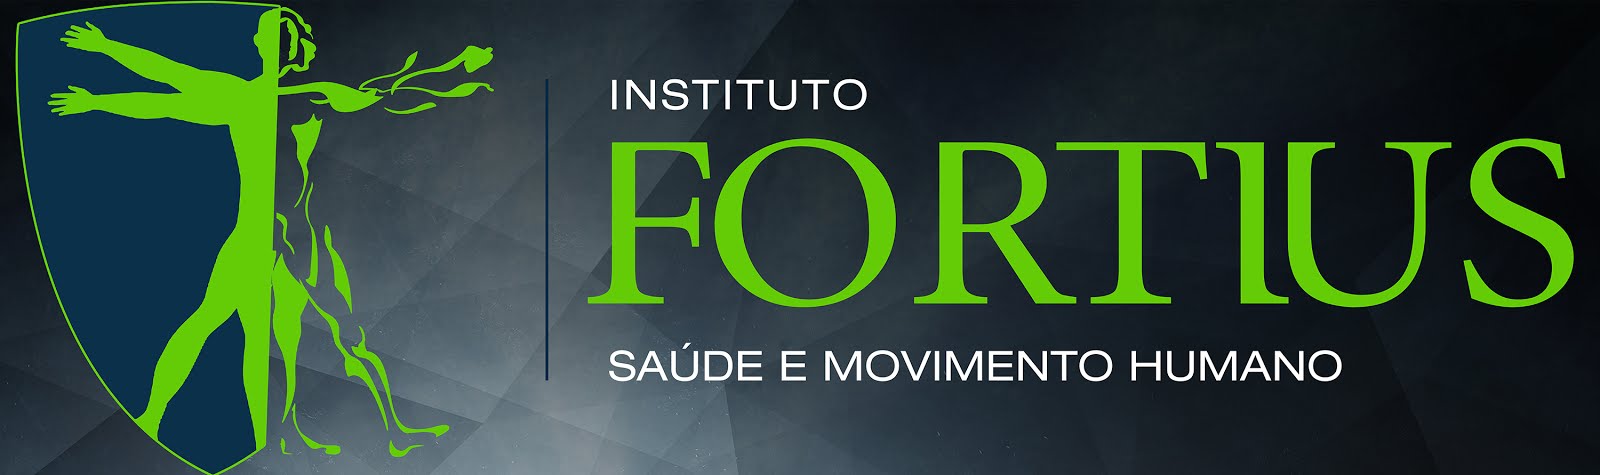 Instituto Fortius